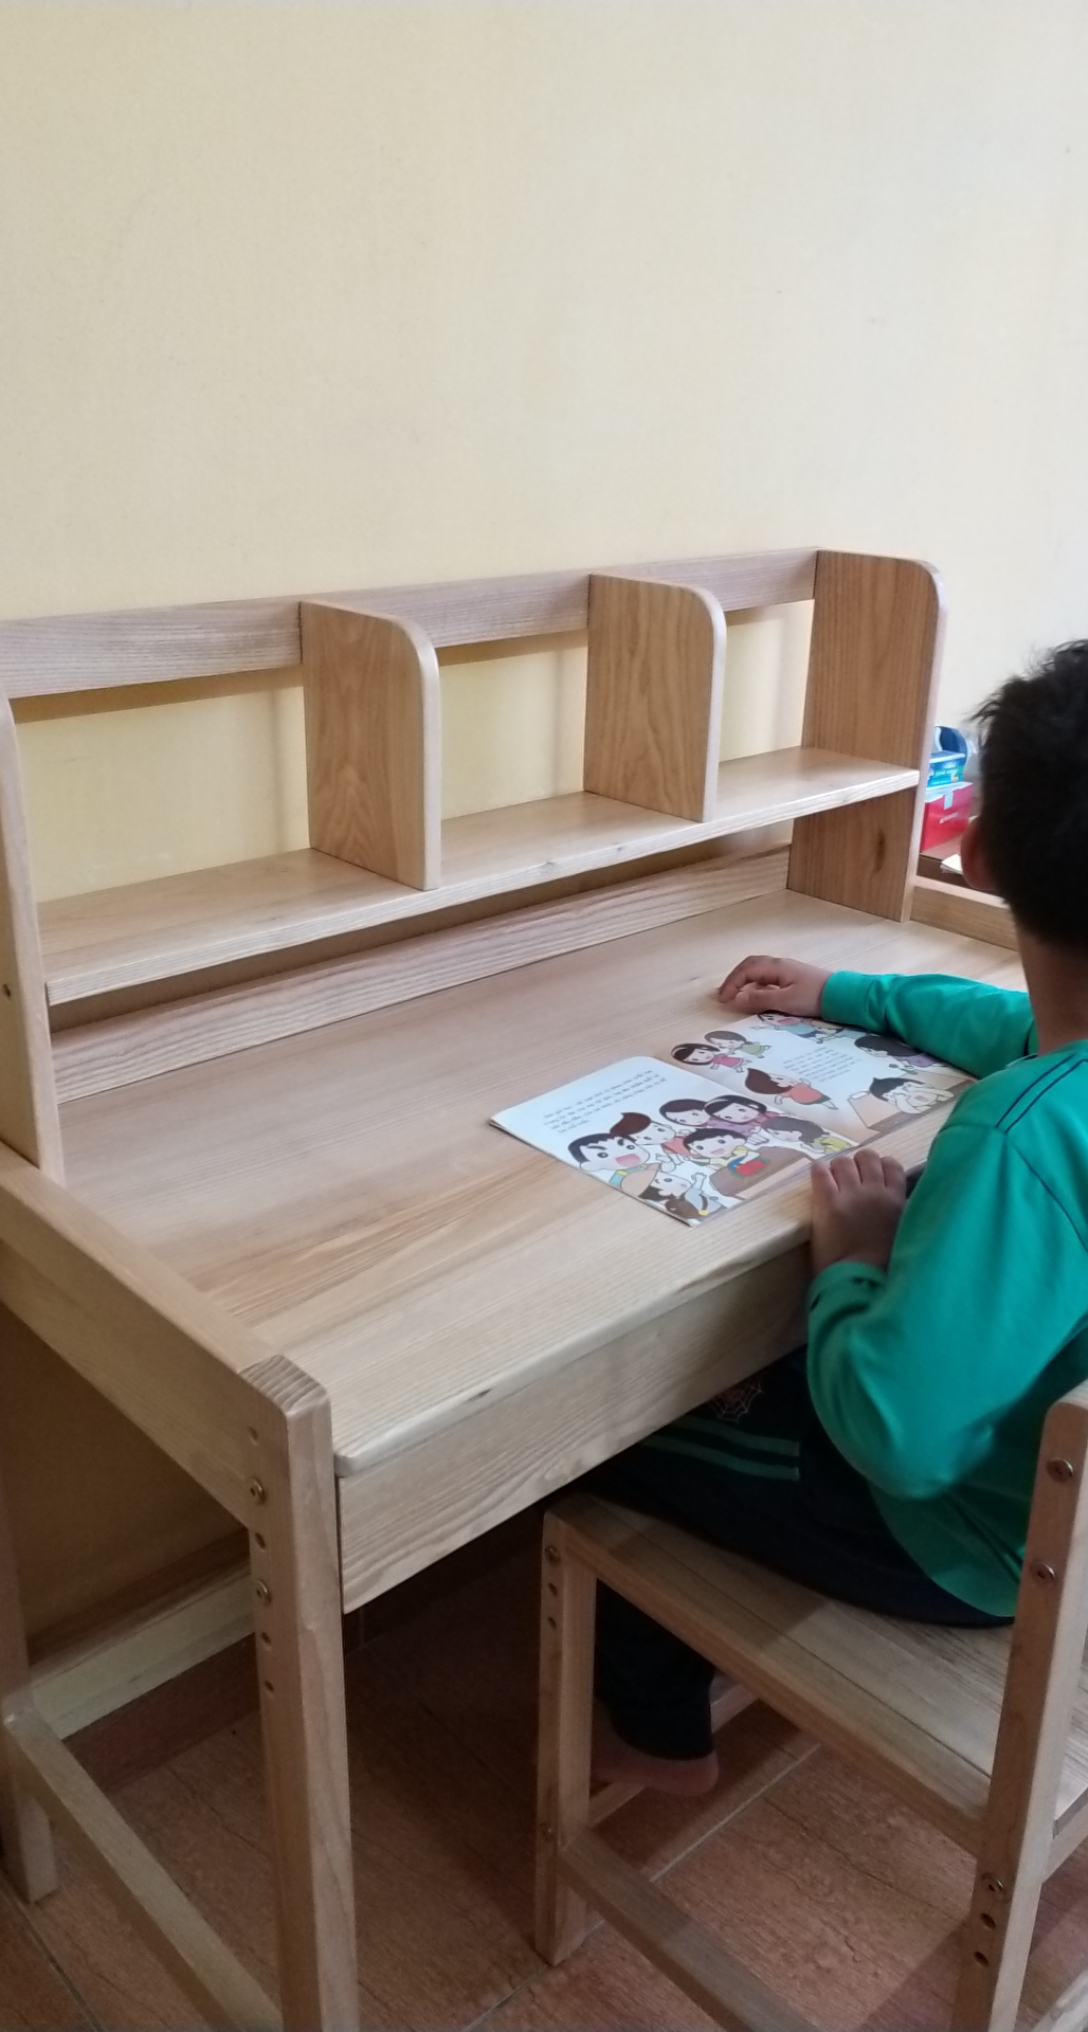 Bộ bàn ghế học sinh thông minh- Thay đổi độ cao thấp- Bộ bàn học sinh gỗ Sồi- CABHS01